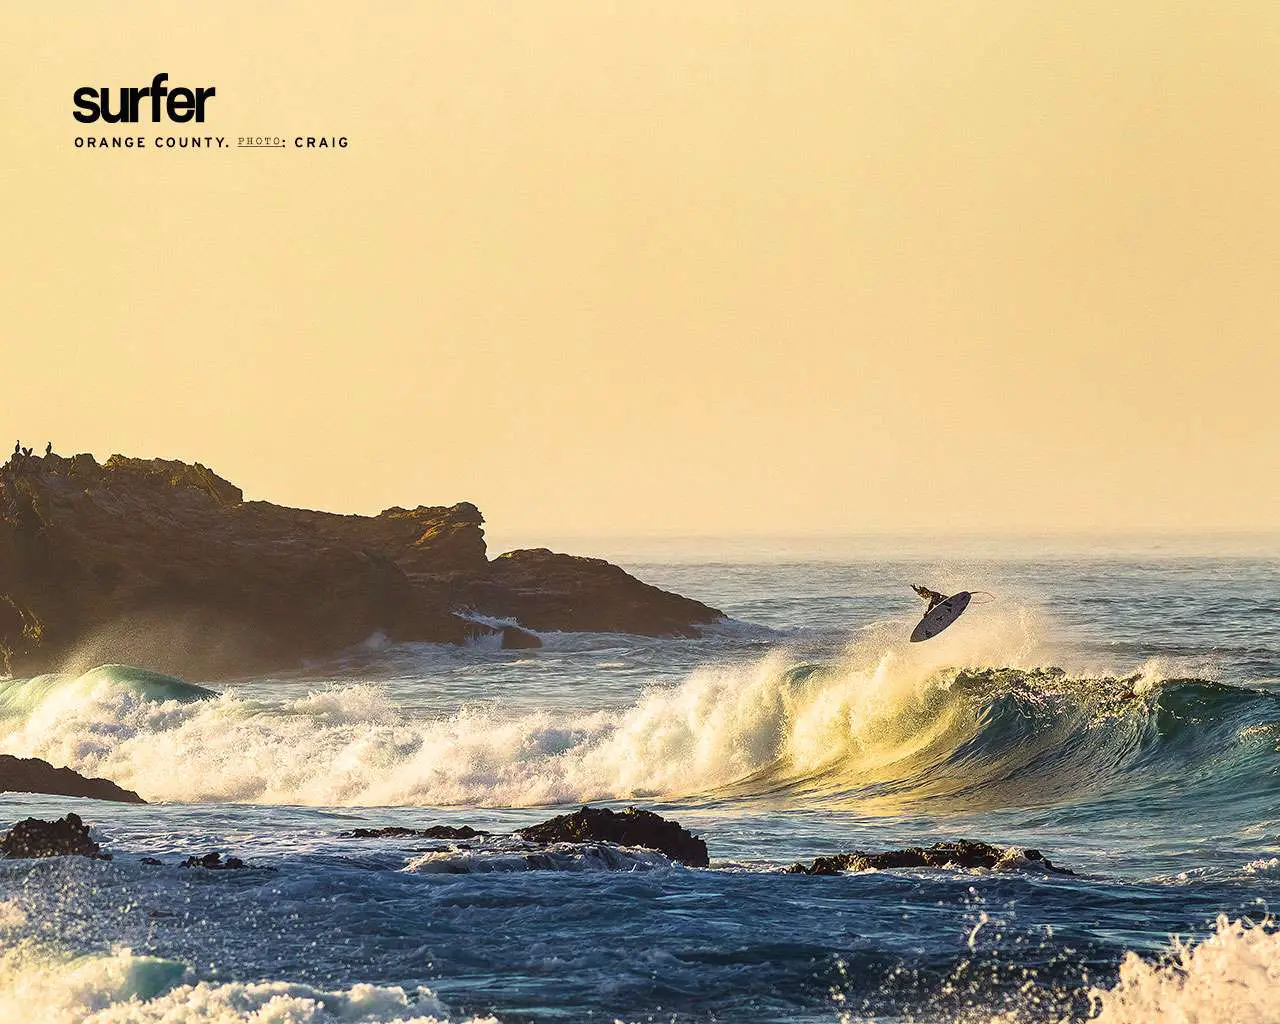 Papel de parede gratuito do oceano com um surfista no meio do salto acima de uma onda perto de rochas e penhascos